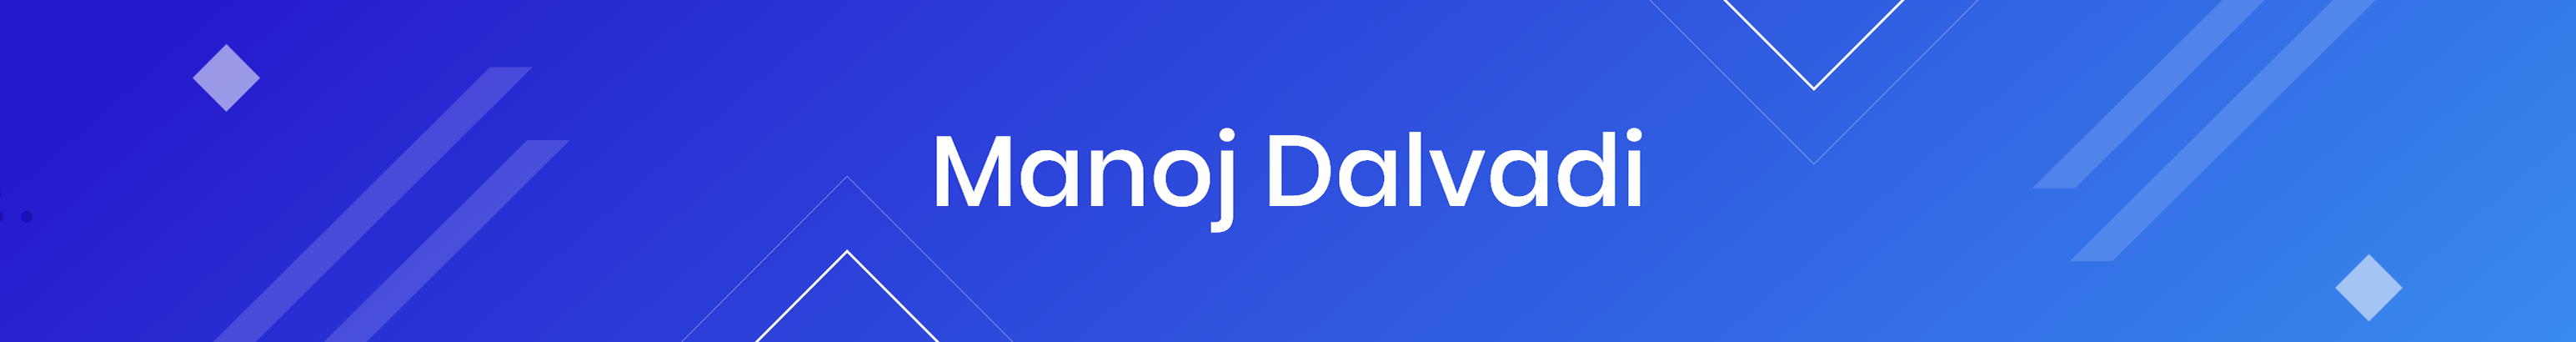 Profil-Banner von Manoj dalvadi